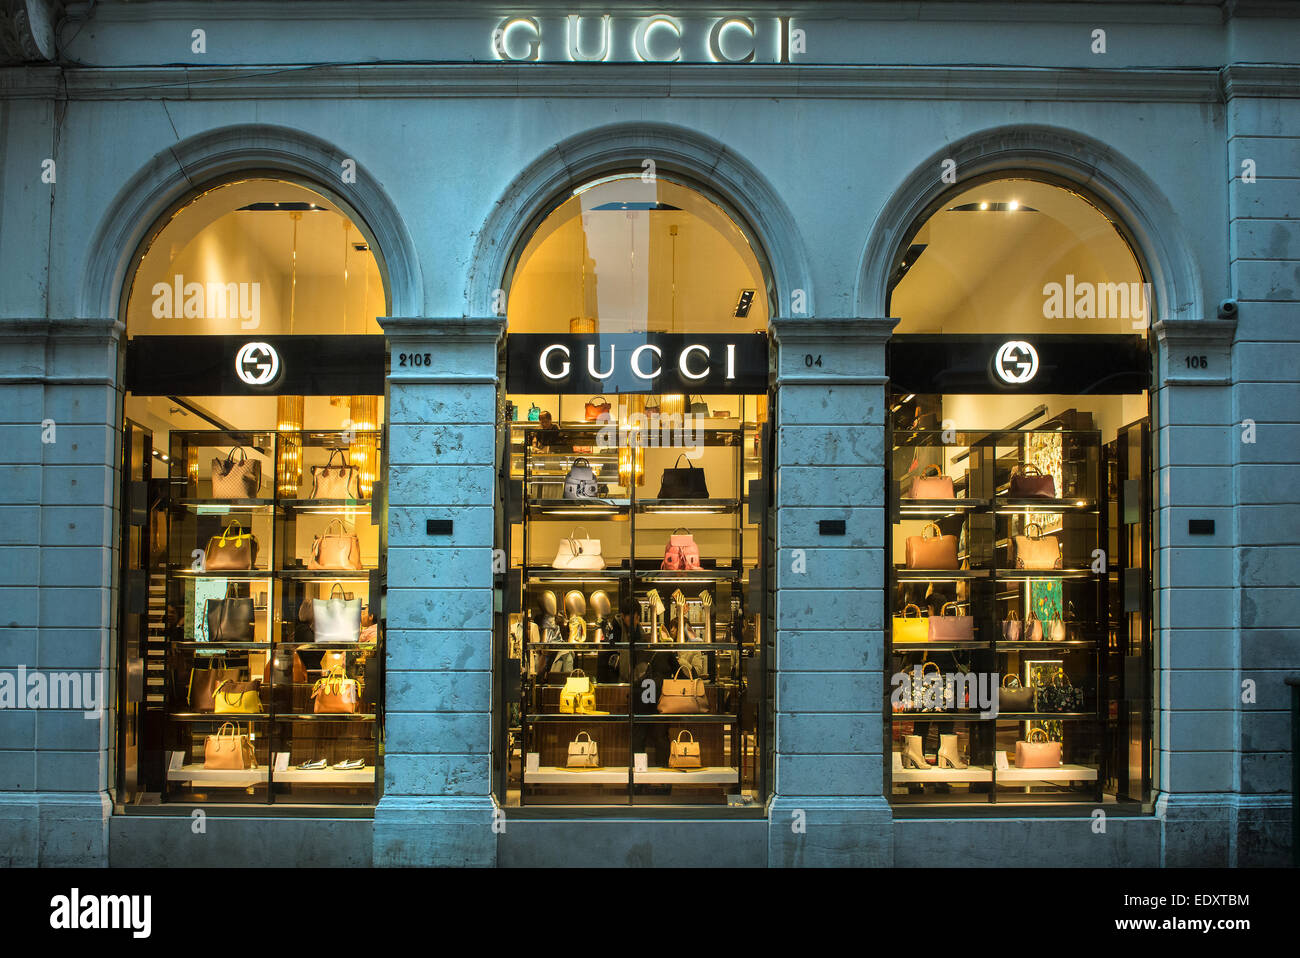 Gucci store in Venice Stock Photo - Alamy